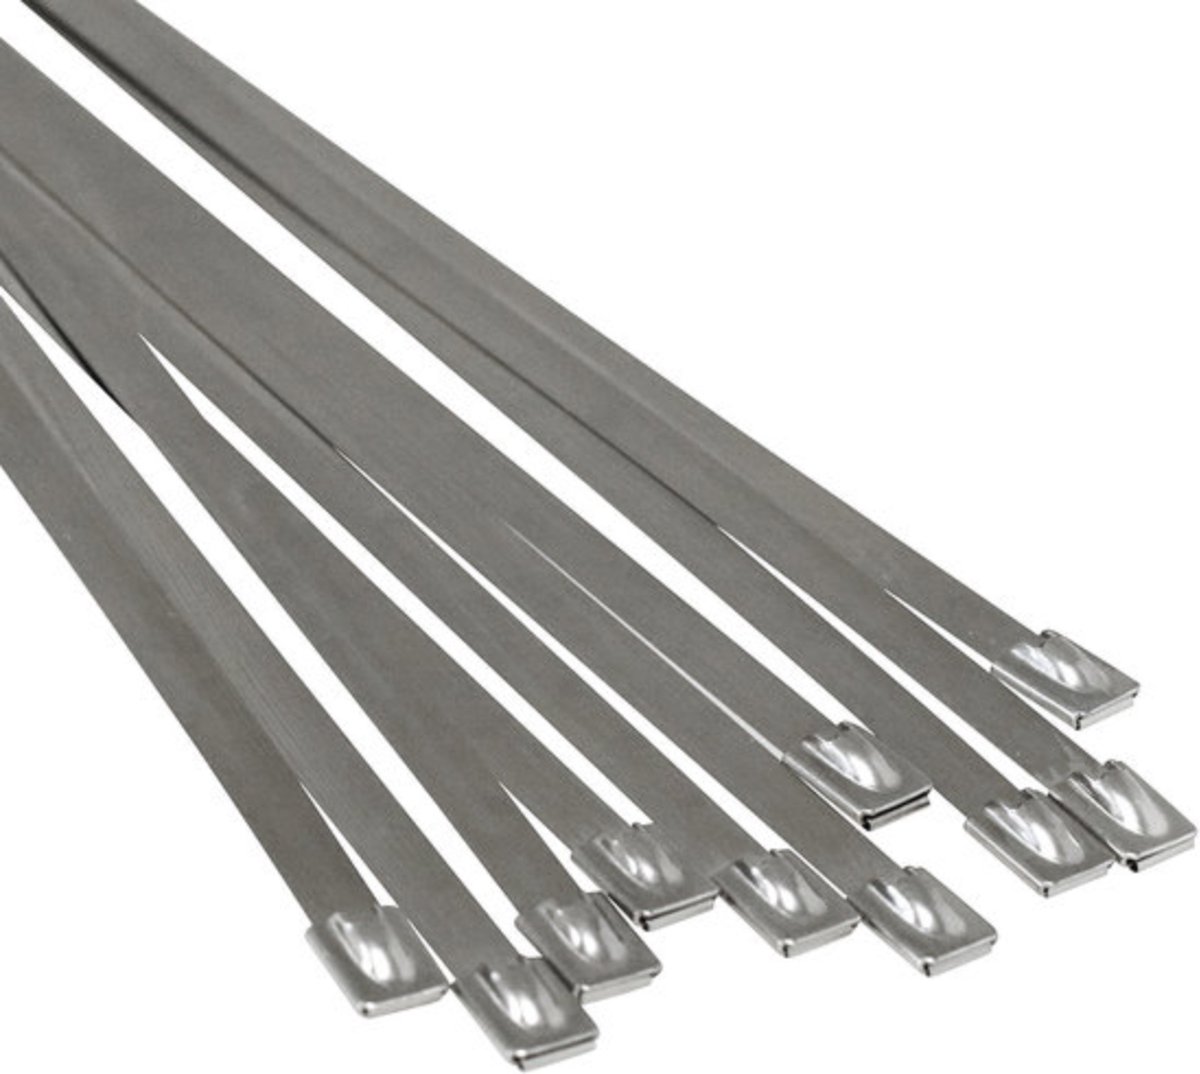 Tie wraps - RVS - 12 stuks - Lengte: 300 mm - Breedte: 4.6 mm - Roestvrij staal - Tie wrap - Kabelbinder - Tie-wrap